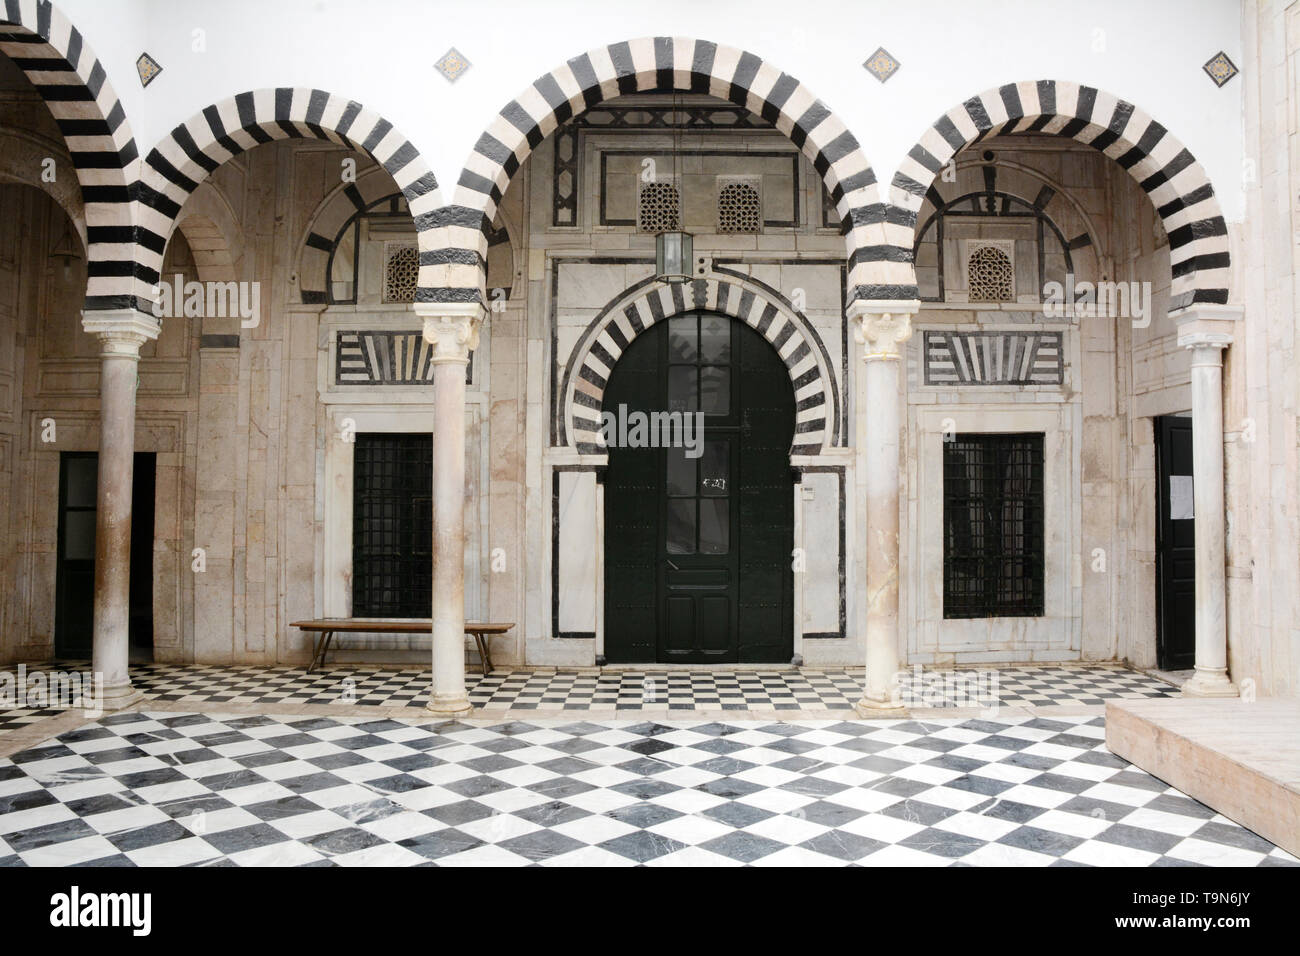 Islamic motivi architettonici lavori di piastrelle nel cortile centrale di un tradizionale del xvii secolo casa nella medina (città vecchia) di Tunisi, Tunisia. Foto Stock